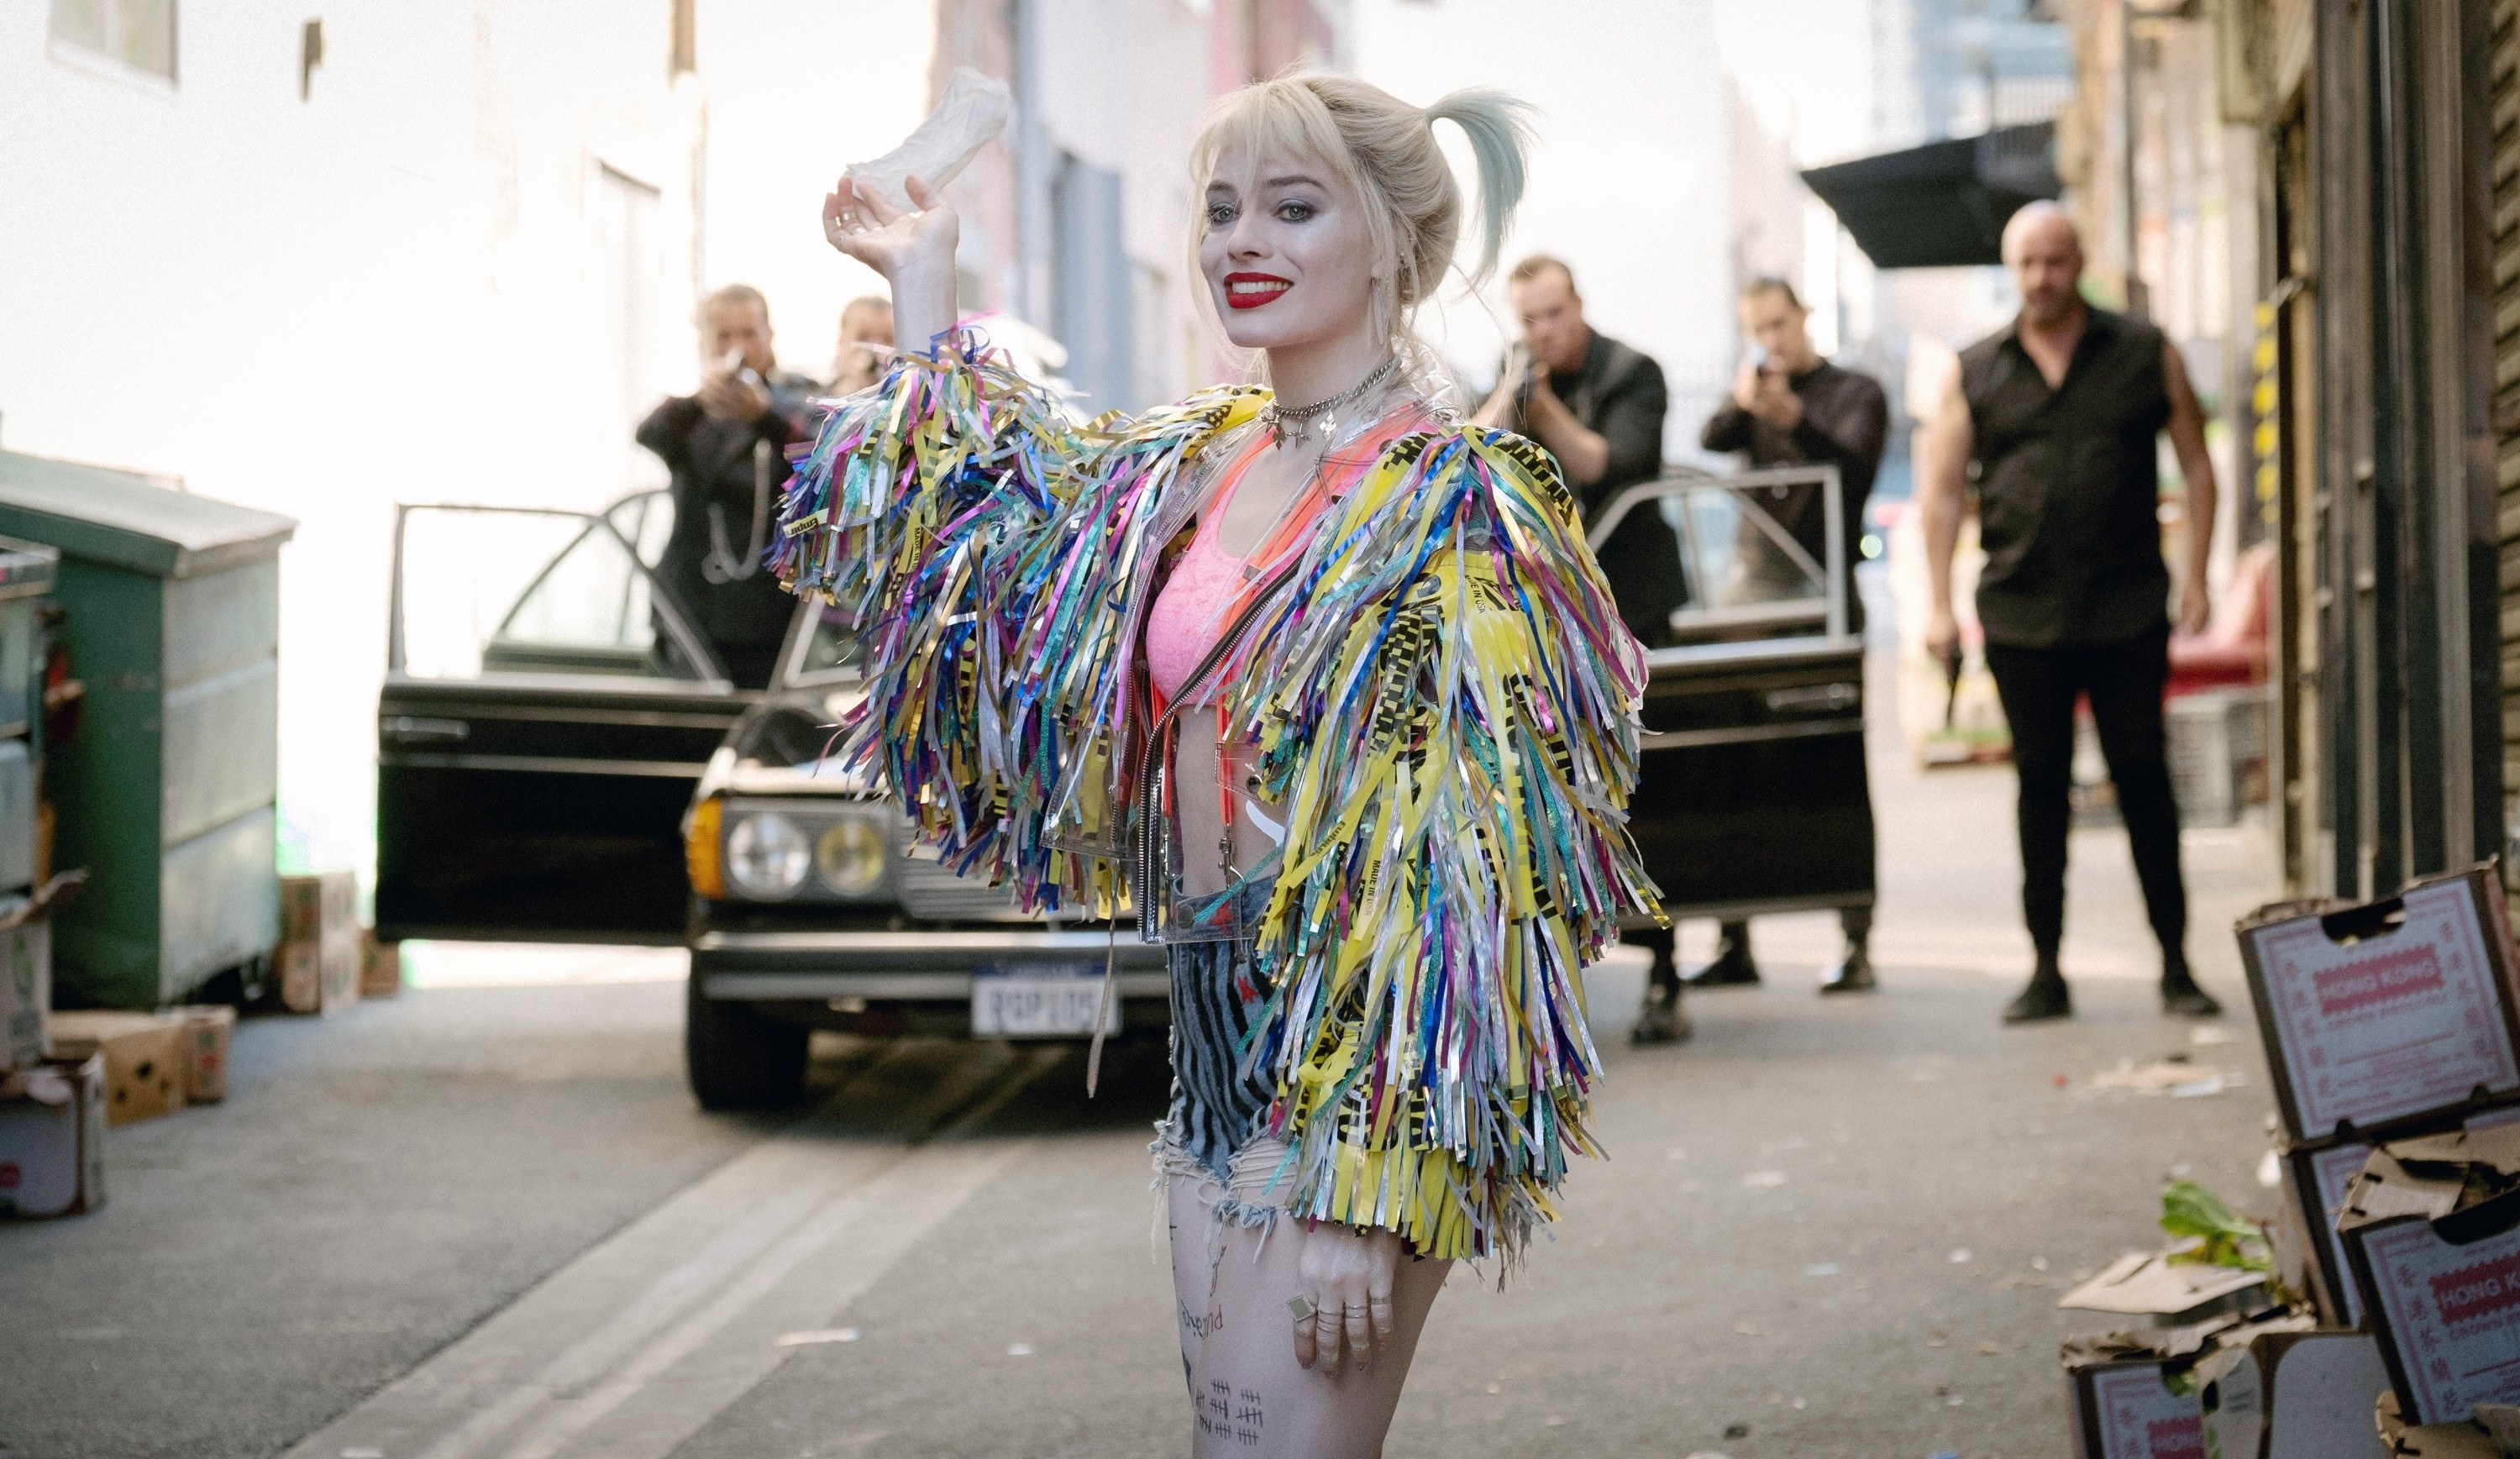 Harley Quinn wearing multicolored tassels